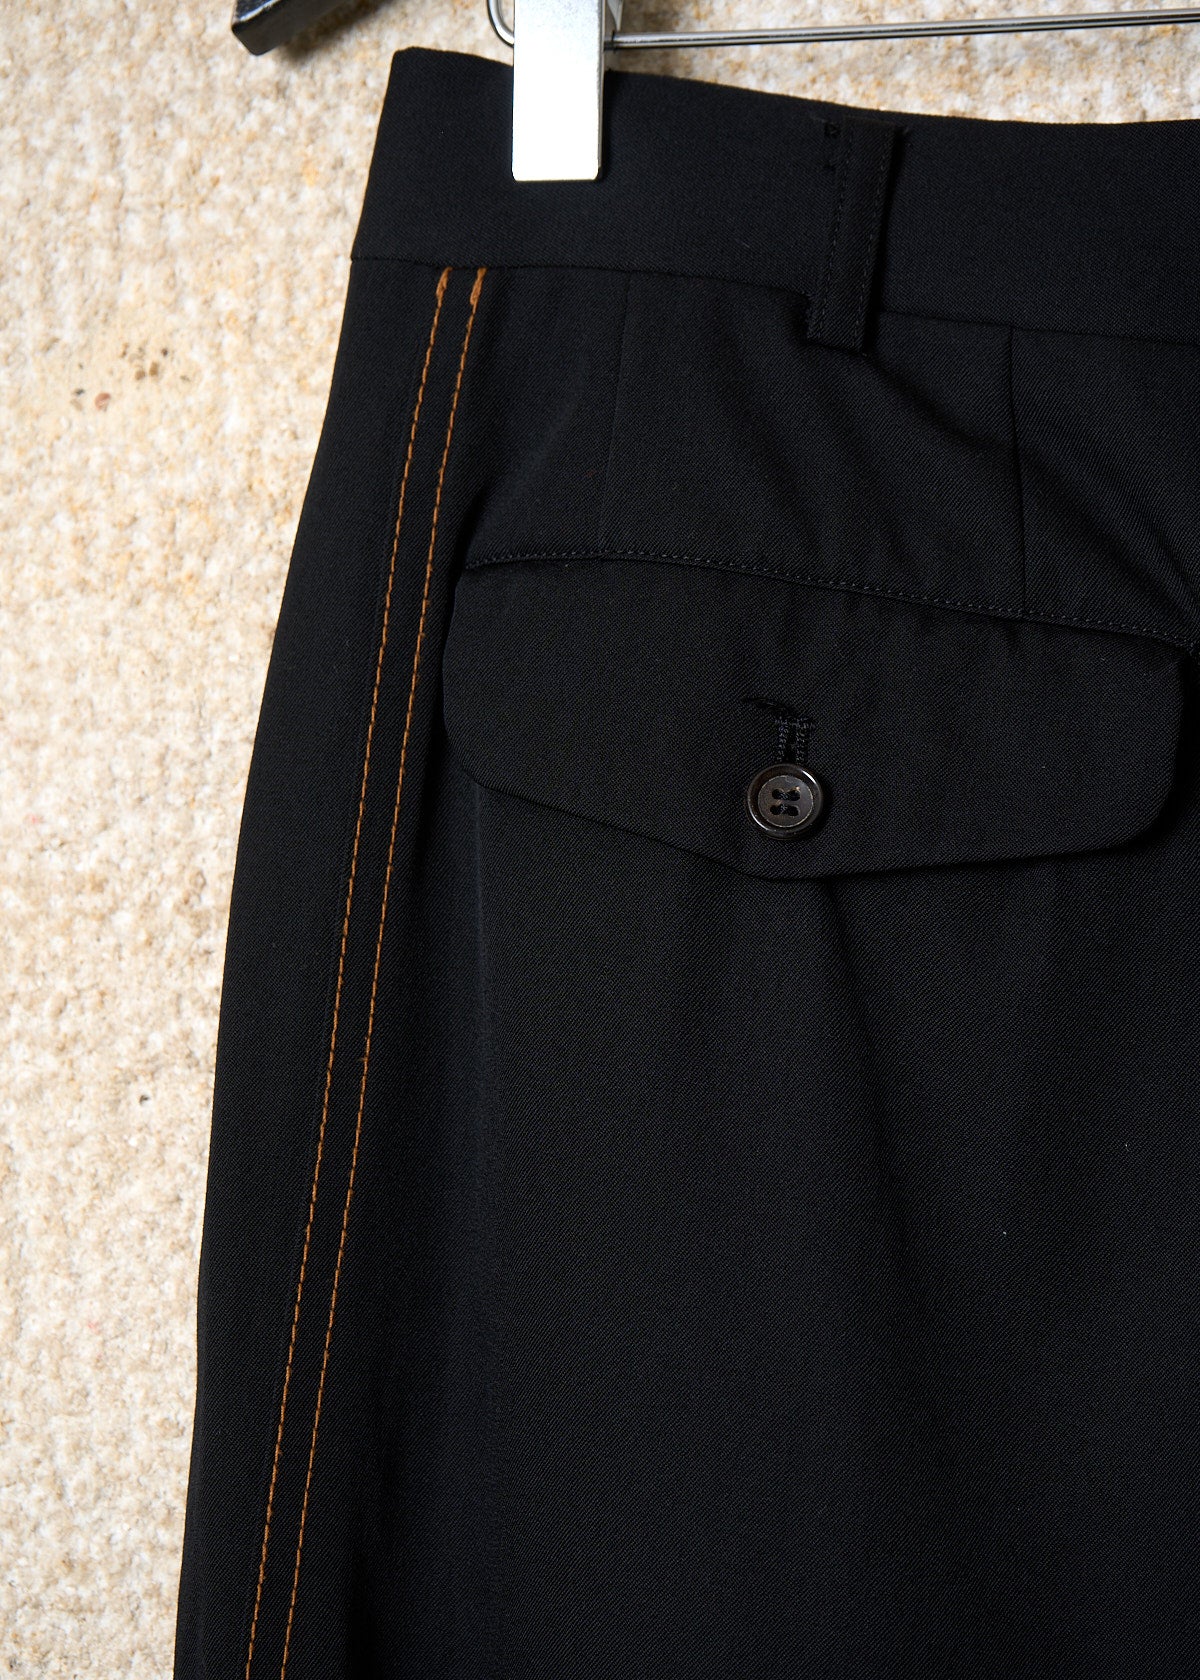 CDG Homme Black Orange Side Lines Light Wool Pants SS1998 - Large